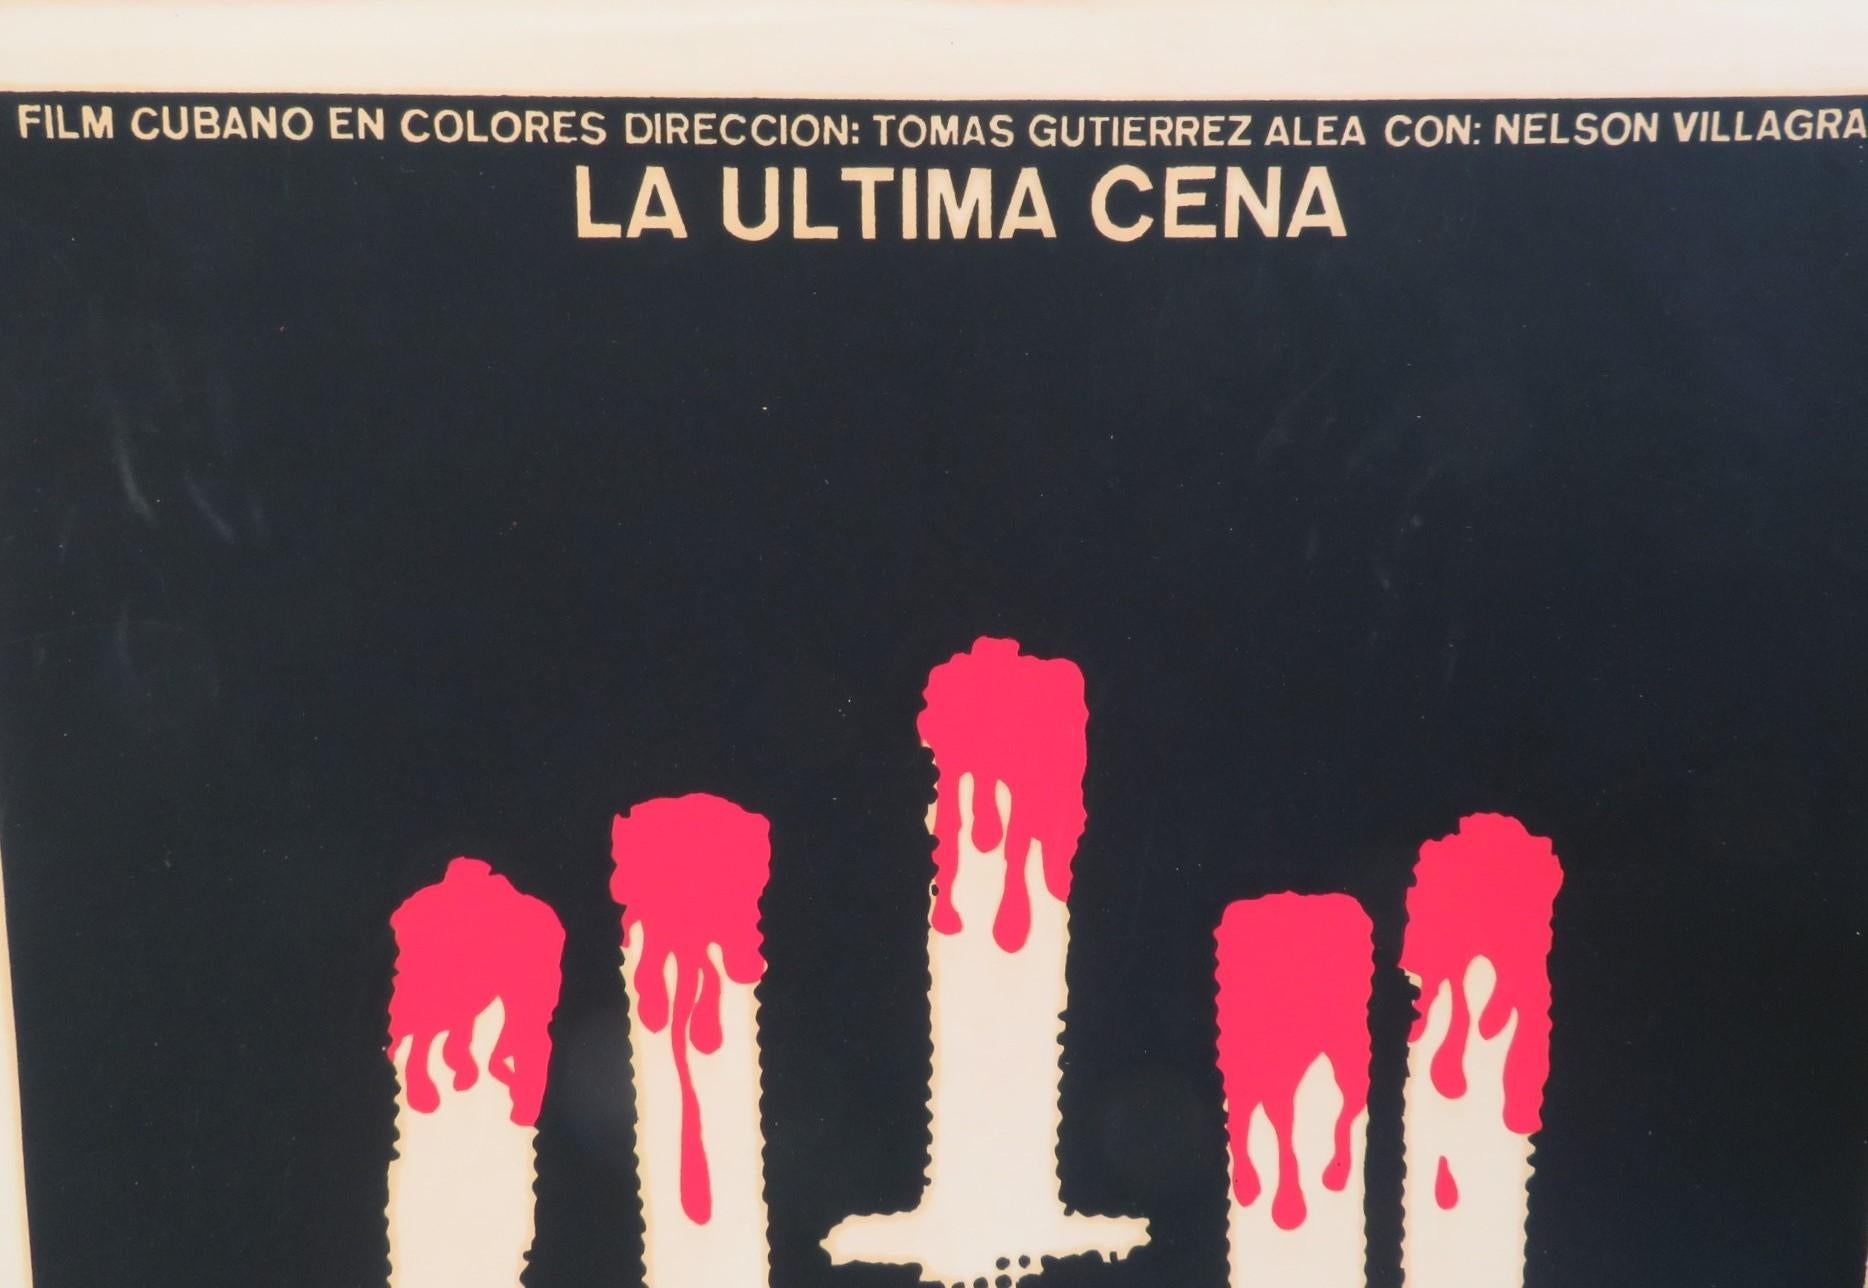 Central American Vintage Film Poster La Ultima Cena Cuban Movie 1977 by Tomas Gutierrez /R. Azcuy For Sale